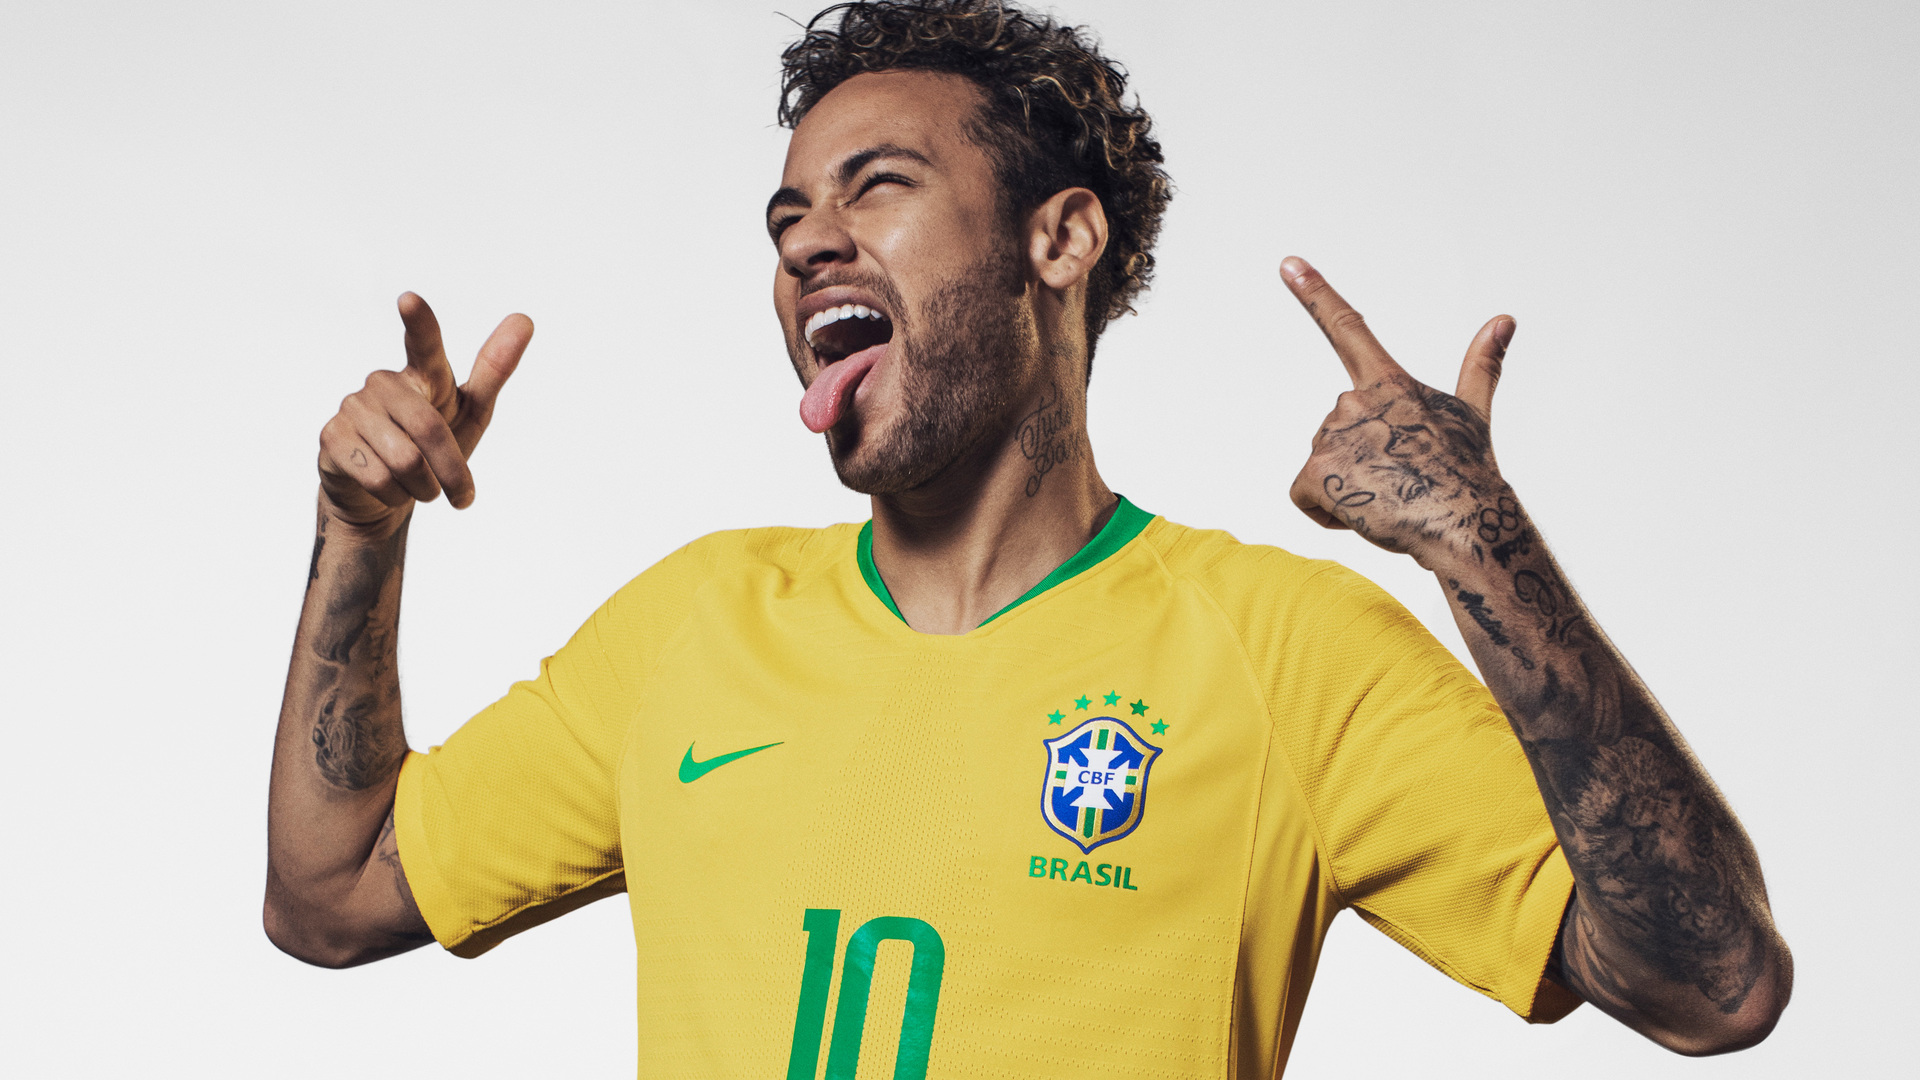 Neymar Hd Brazil 2021 Wallpapers